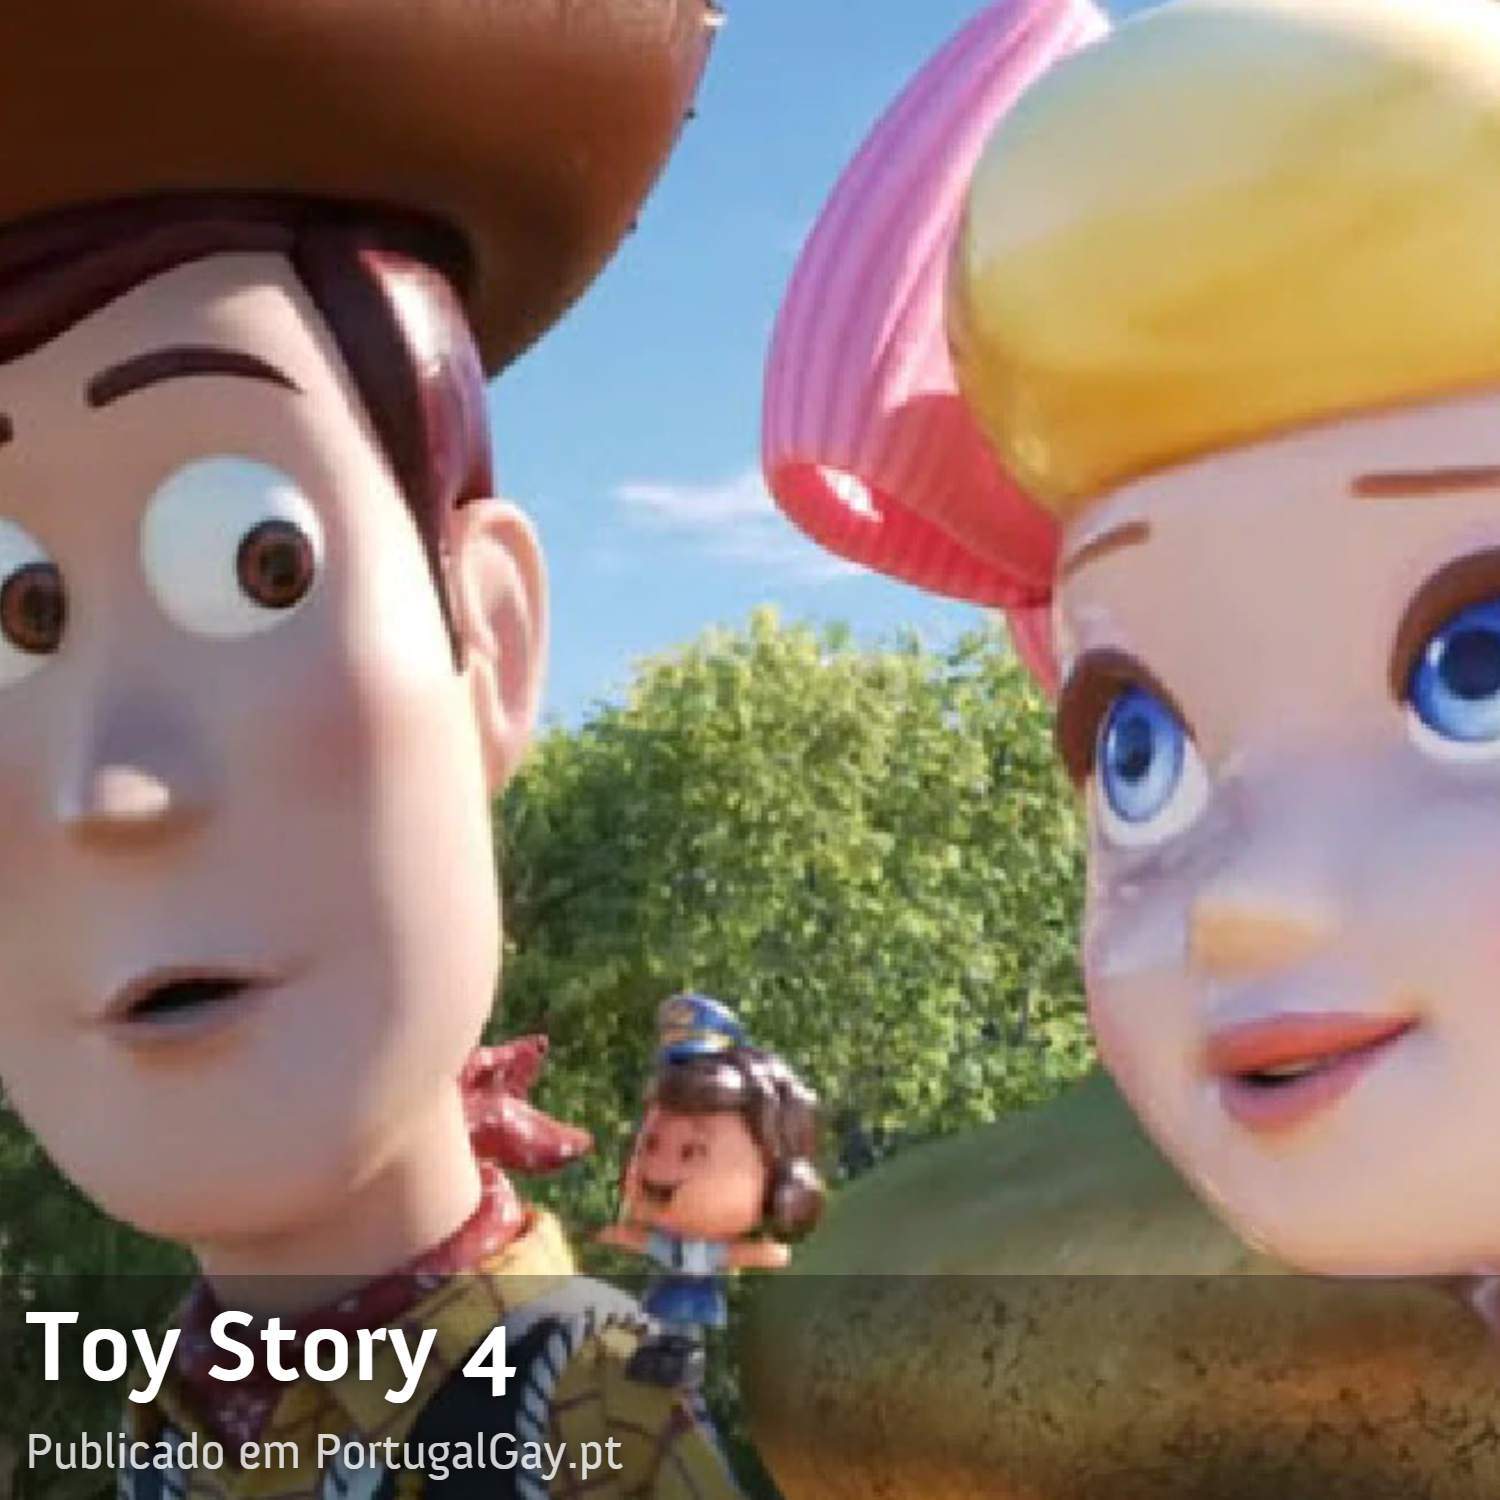 CINEMA: Grupo homofbico norte-americano pede boicote a Toy Story 4